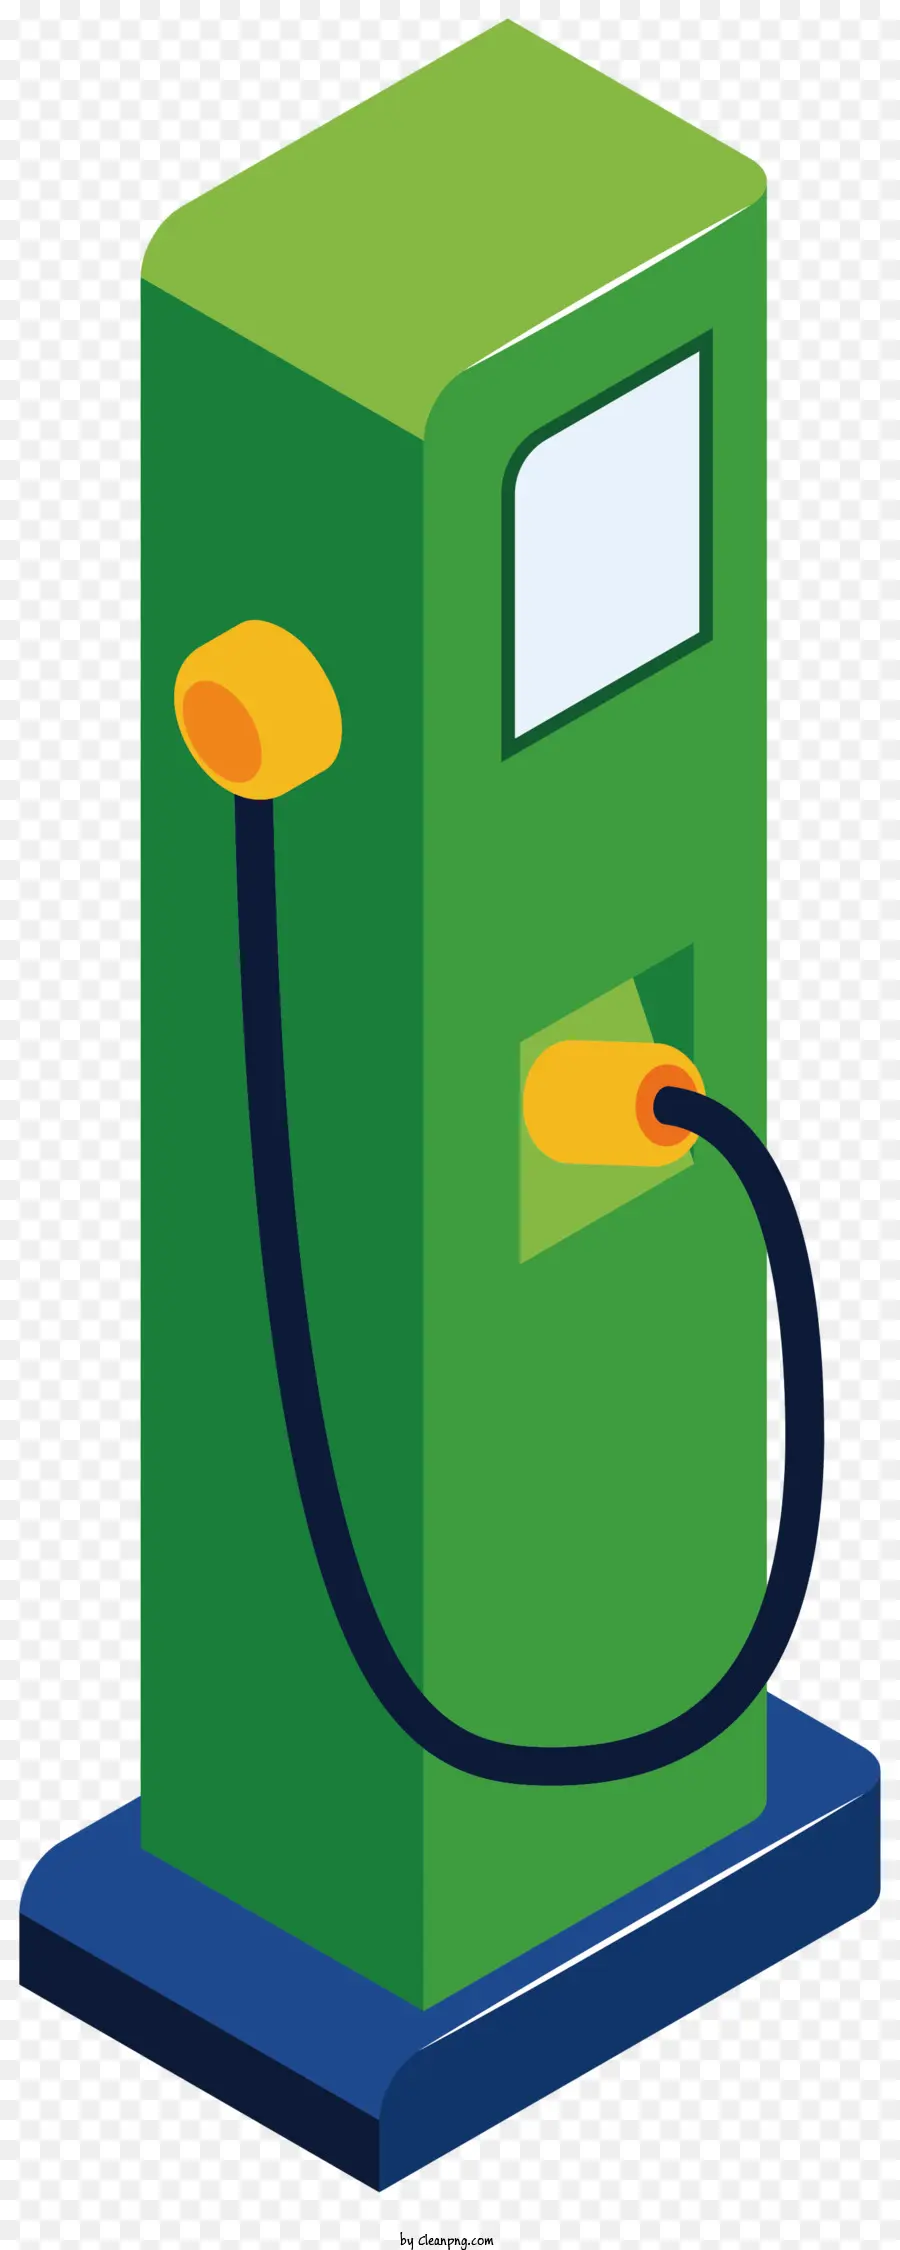 Greenpumpe Green Gaspumpe Open-Top Gaspumpe Schlauch angeschlossen, die an Gaspumpe gelbes Elektrokabel angeschlossen sind - Klares, einfaches Bild der Green Gaspumpe